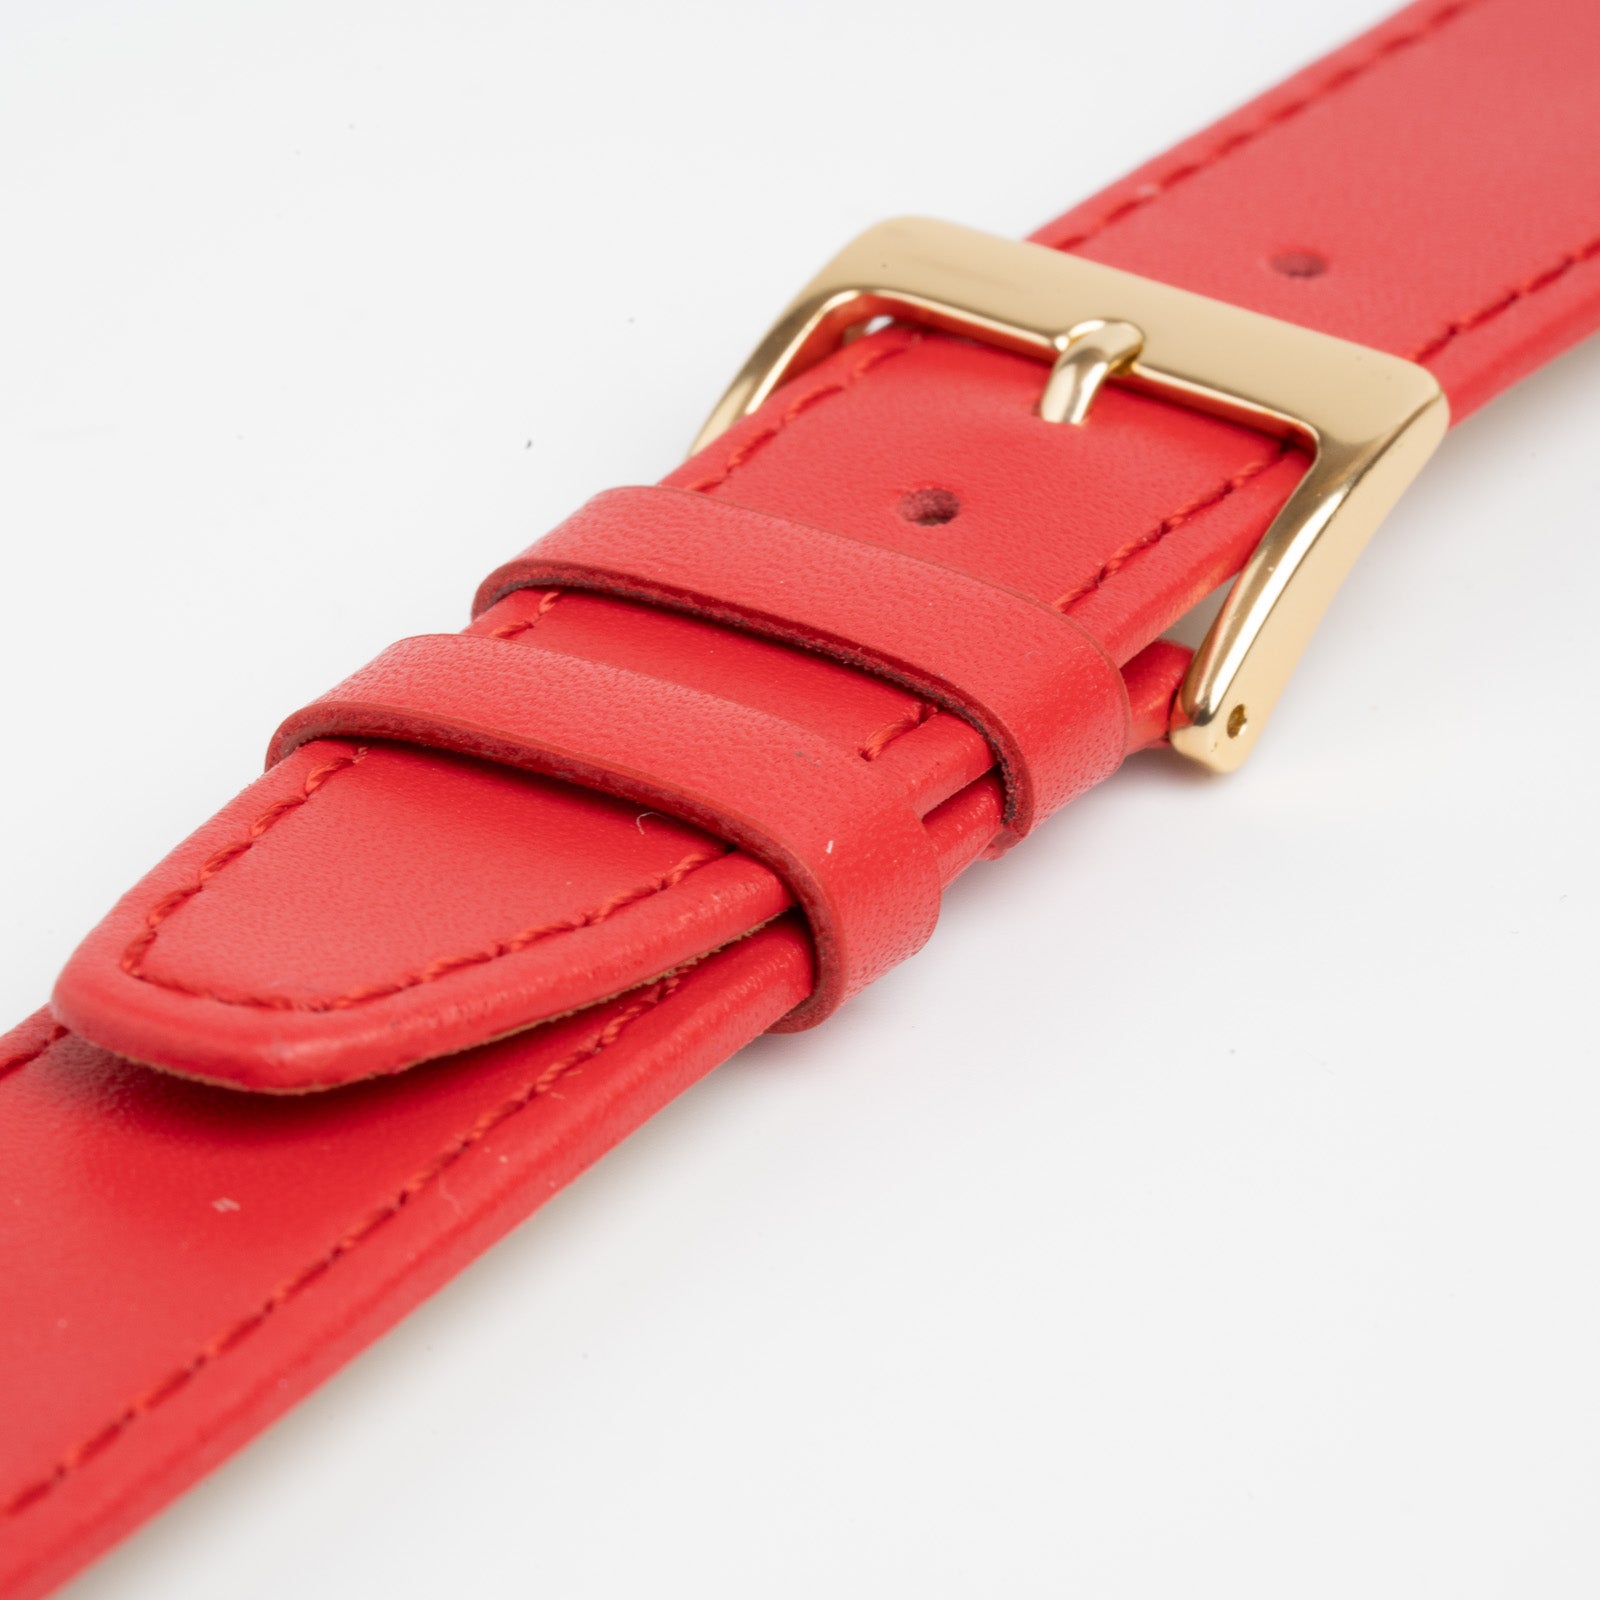 Mayfair Subtle Red Watch Strap